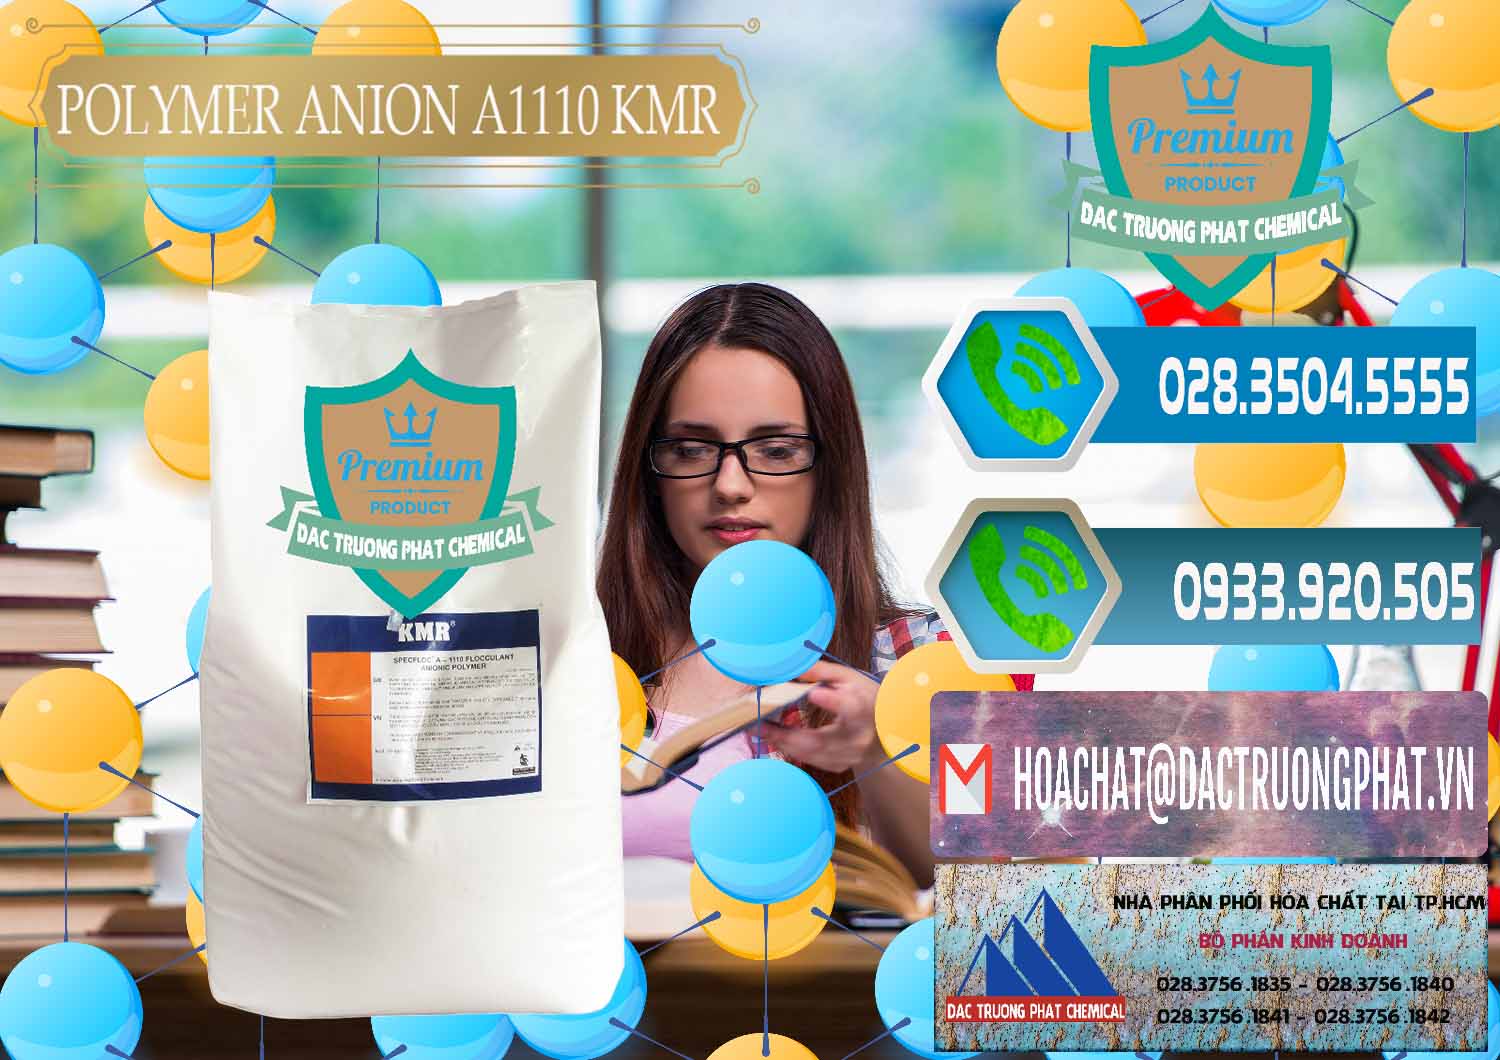 Chuyên phân phối & bán Polymer Anion A1110 - KMR Anh Quốc England - 0118 - Nơi chuyên kinh doanh _ phân phối hóa chất tại TP.HCM - congtyhoachat.net